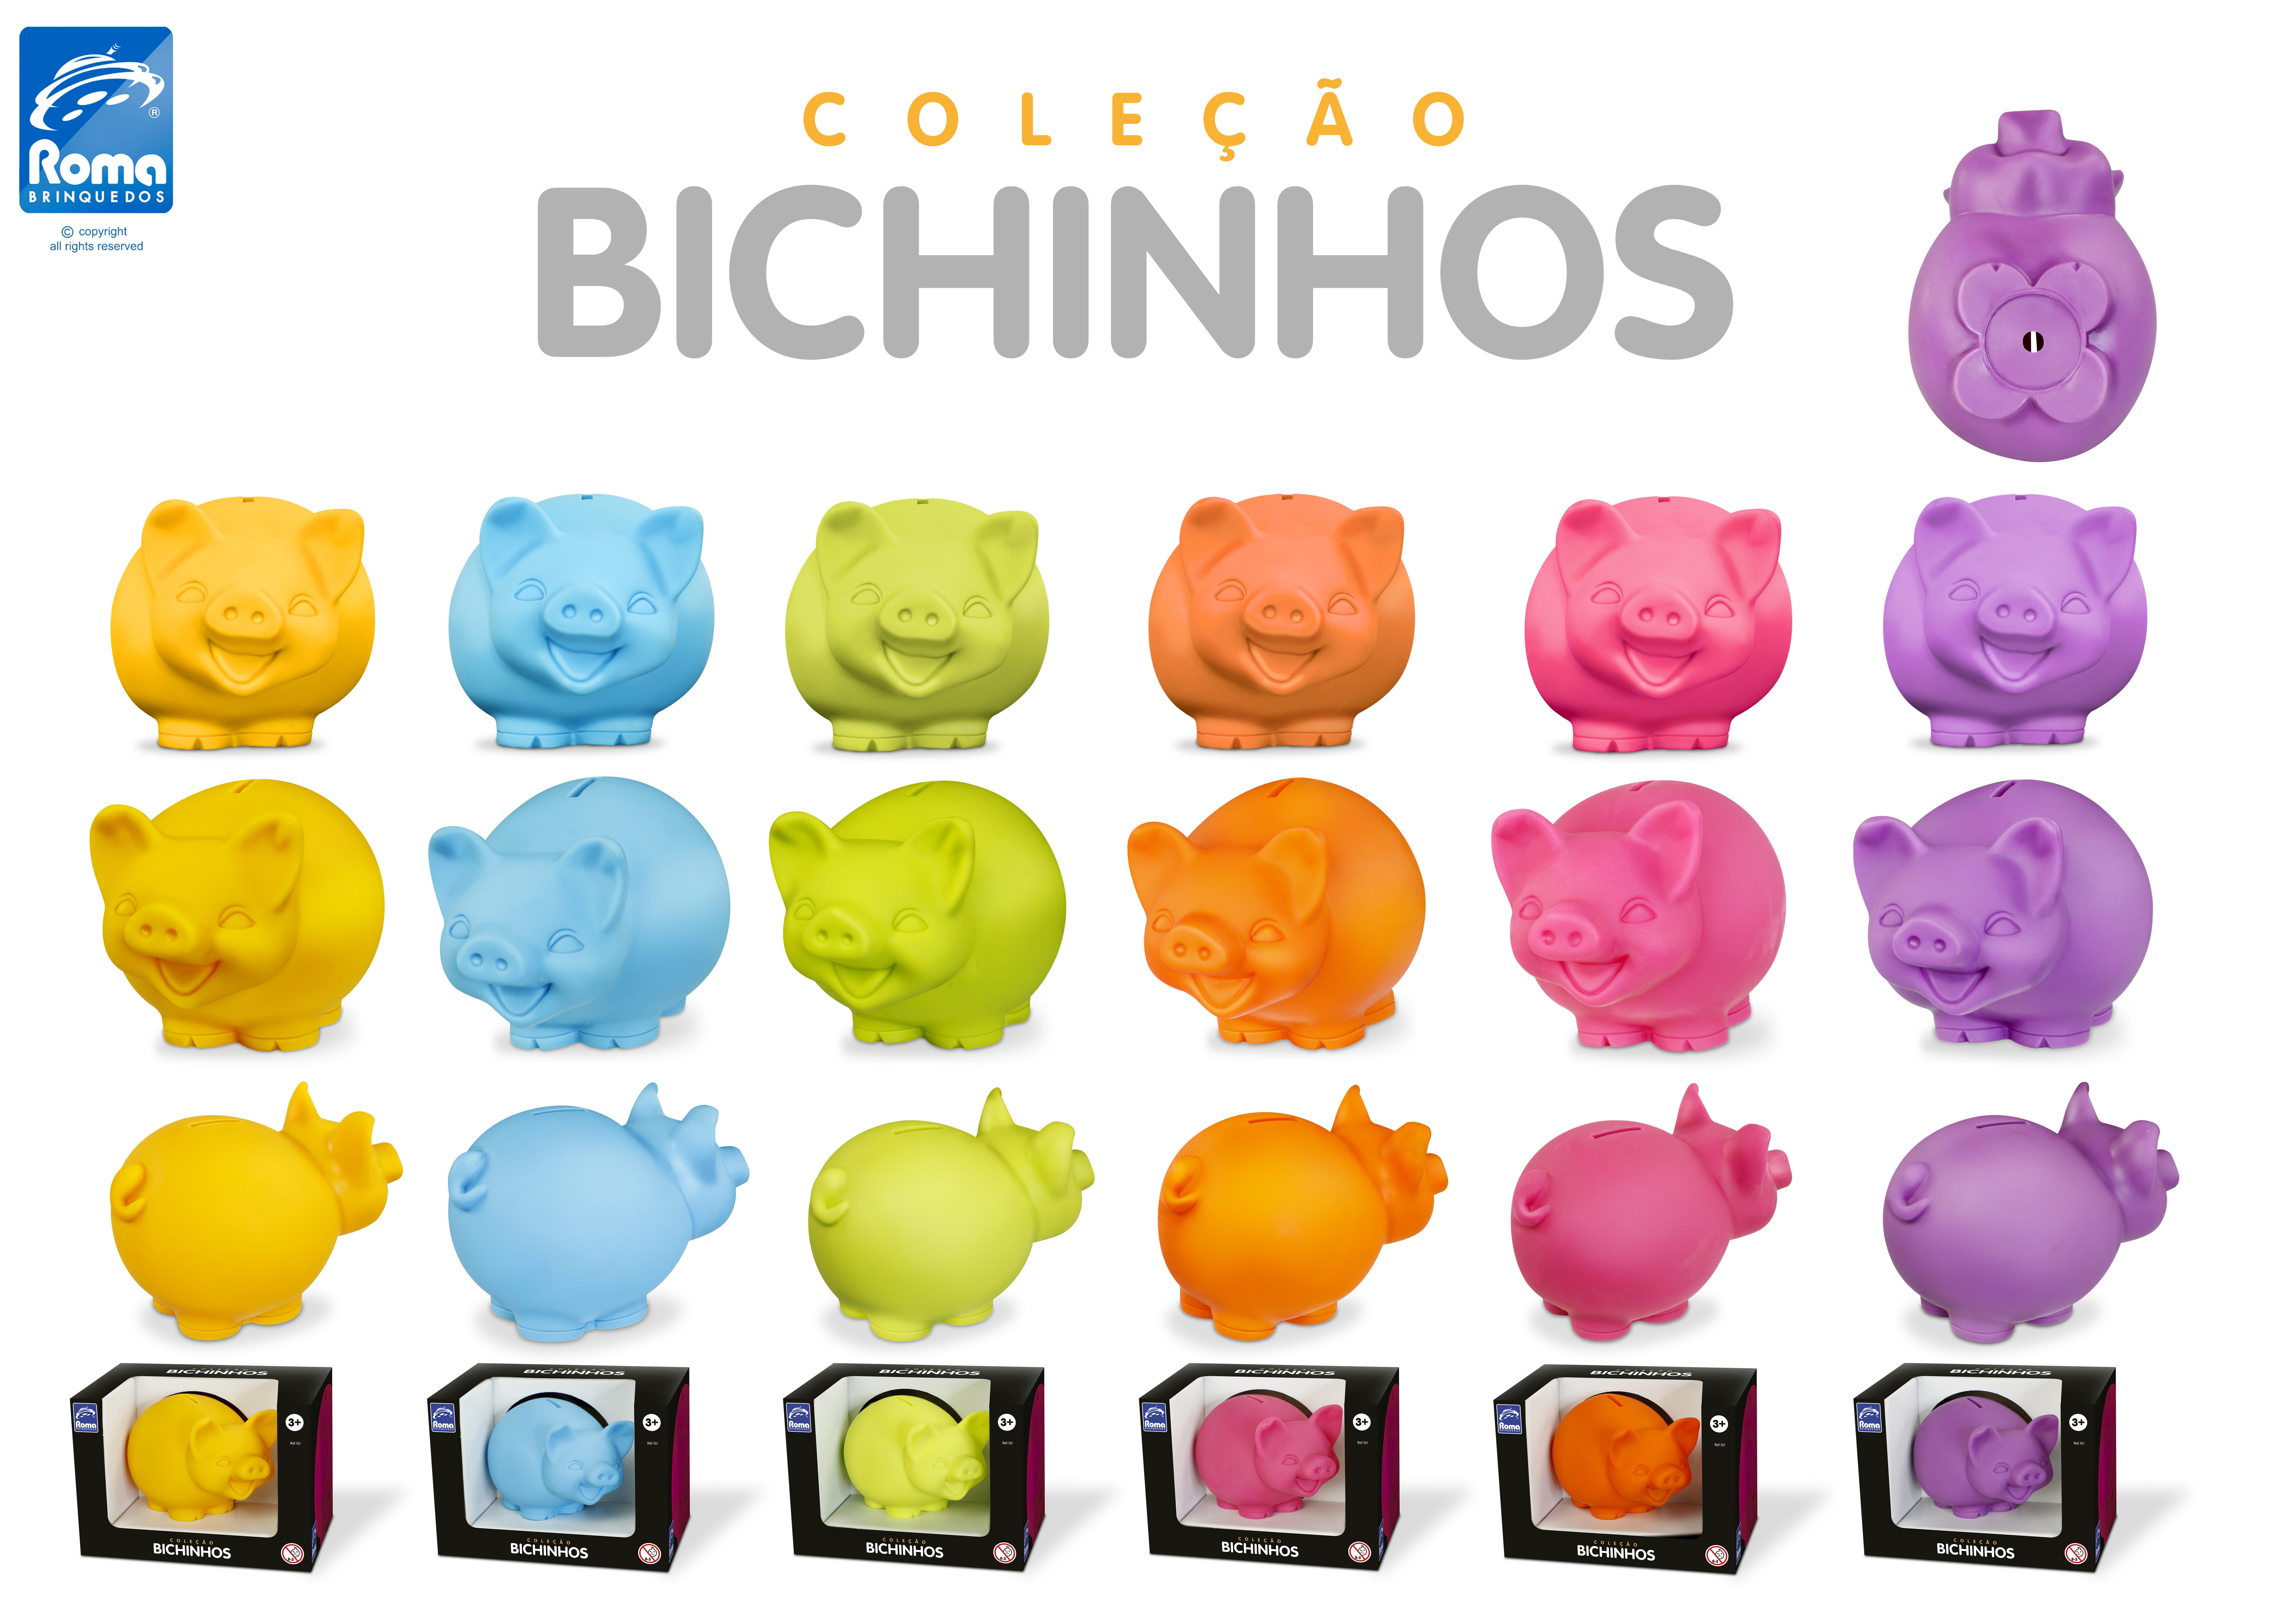 0101 - Coleção Bichinhos - Porco Estilizado.png